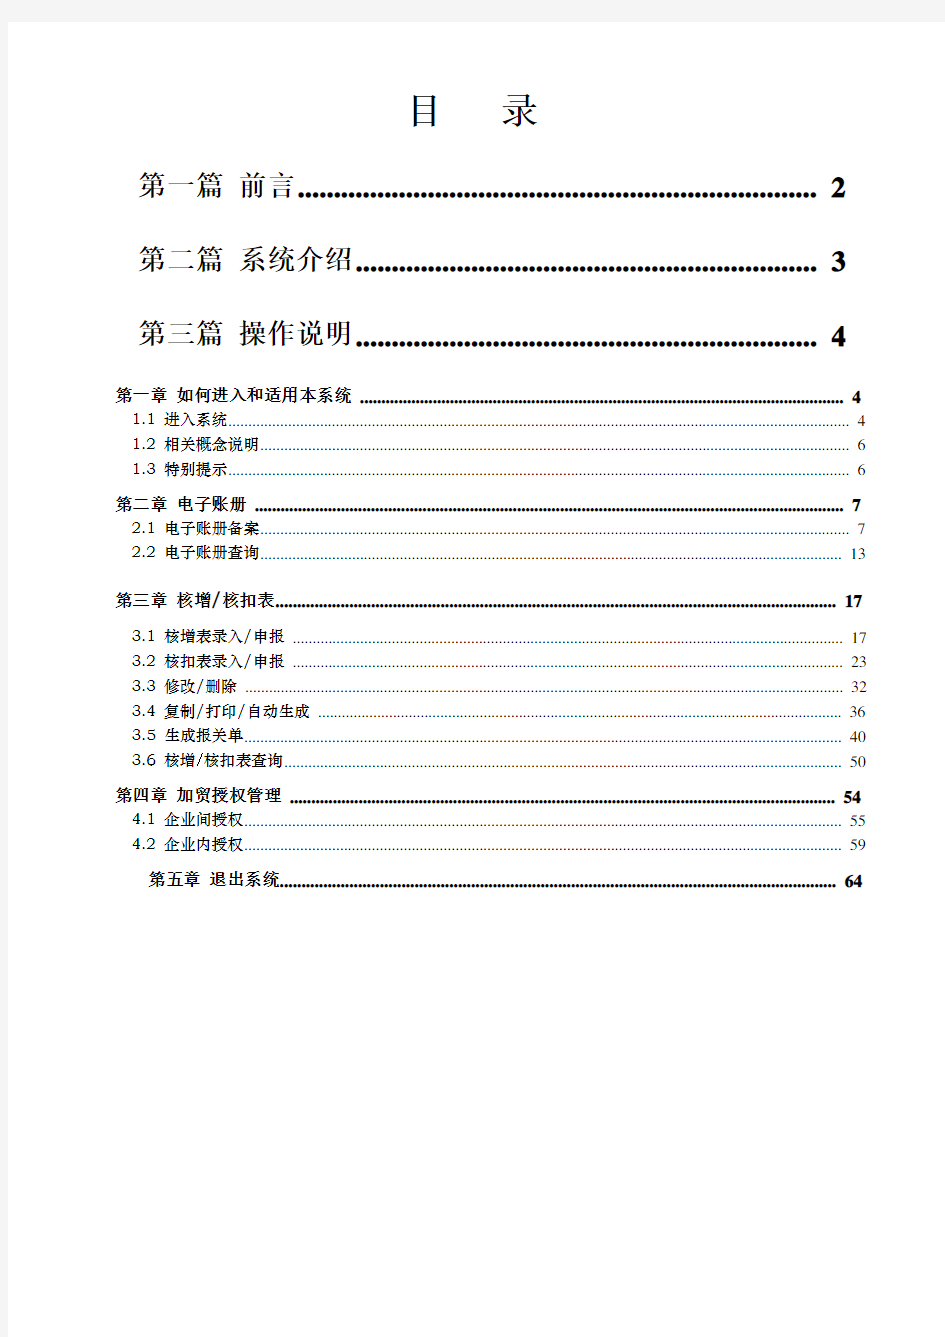 中国电子口岸保税物流管理系统操作手册